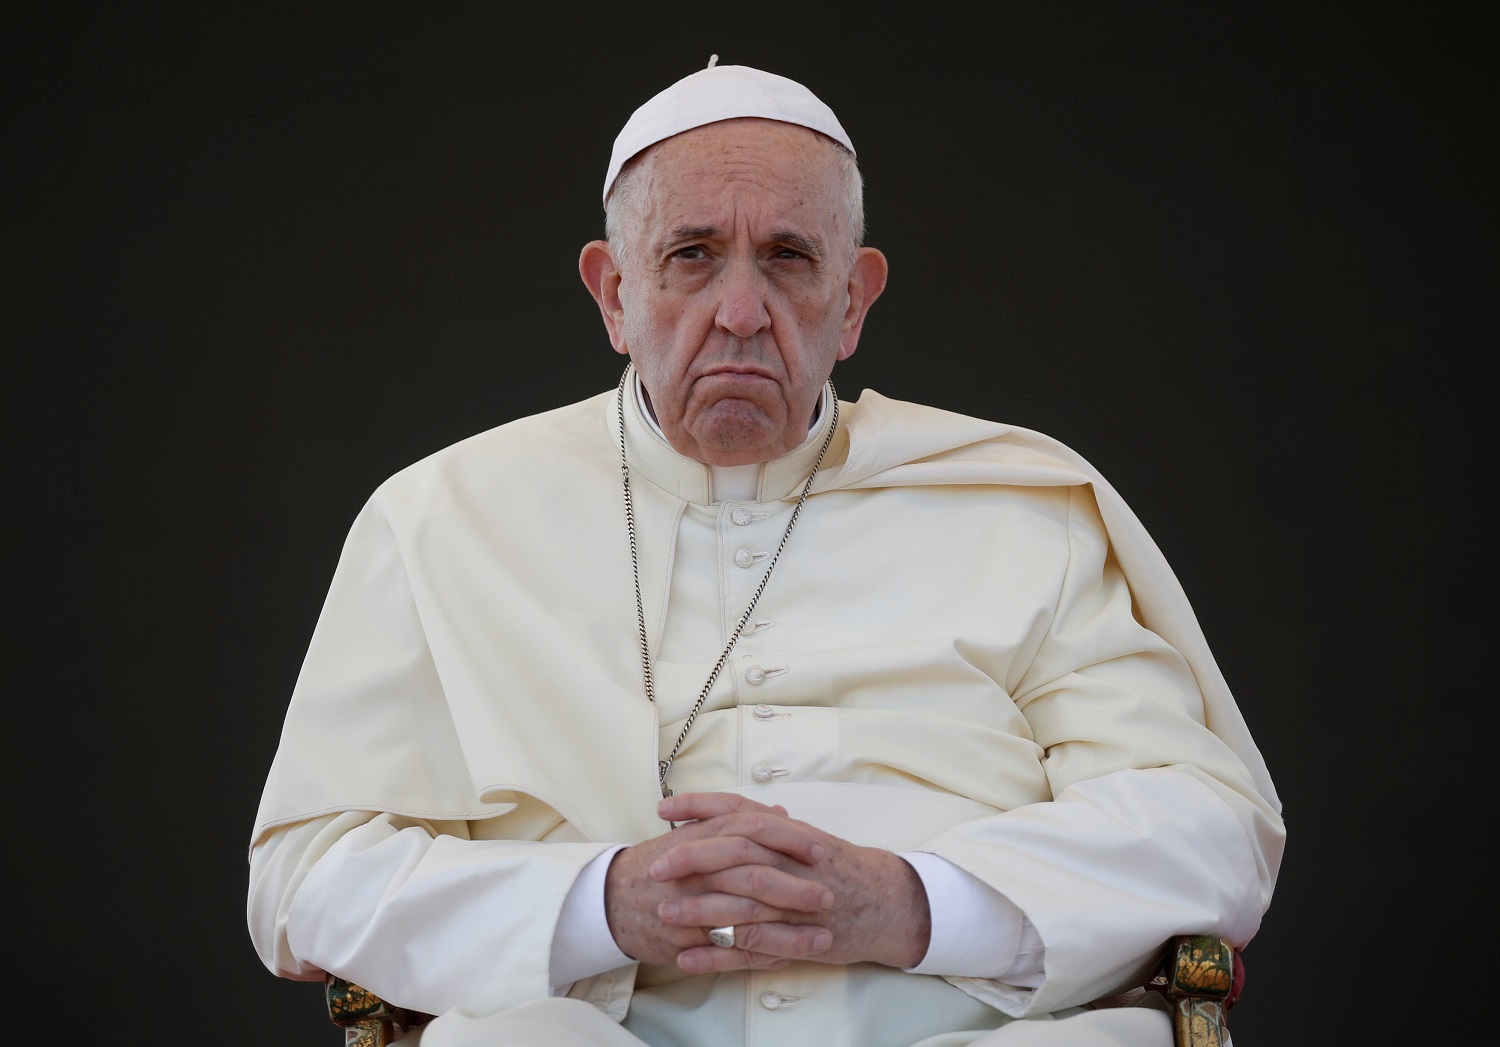 El papa Francisco recuerda a Venezuela y a su población duramente afectada